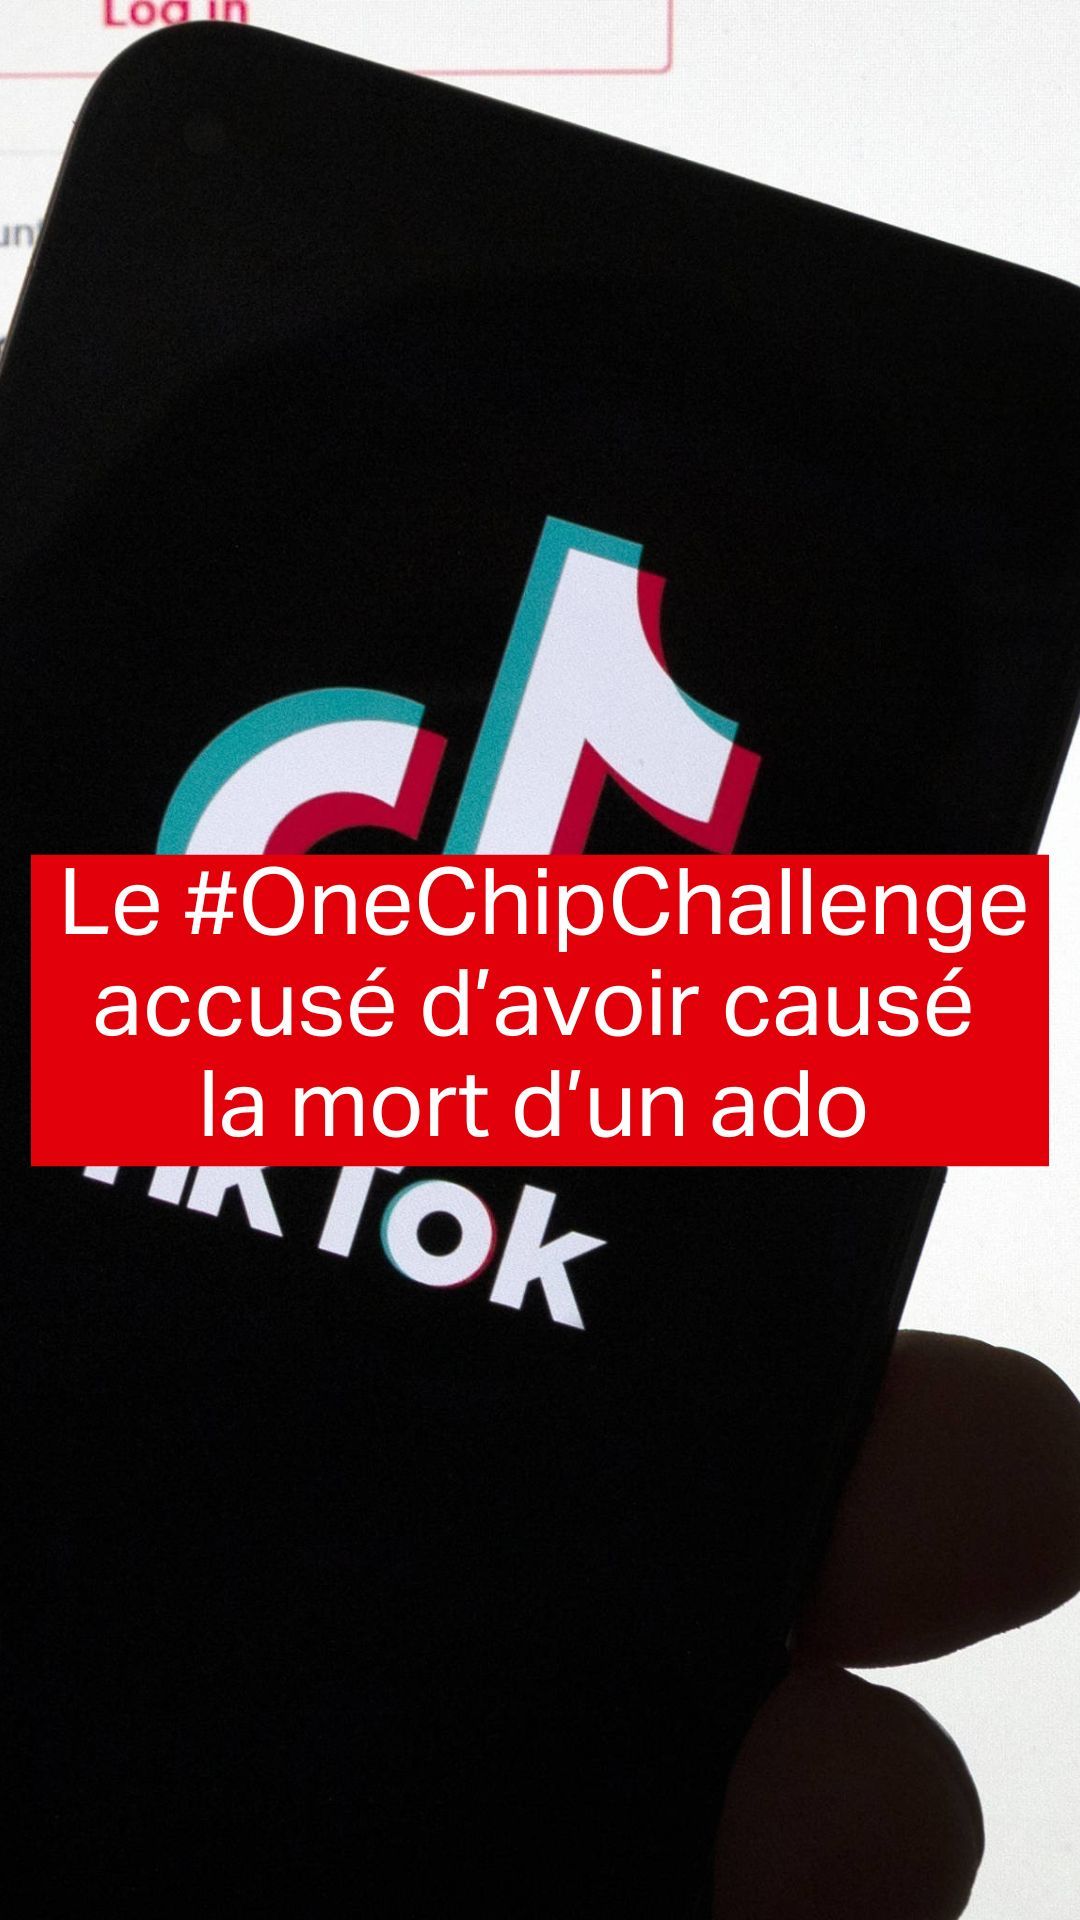 One chip challenge» : en quoi consiste ce défi TikTok ?